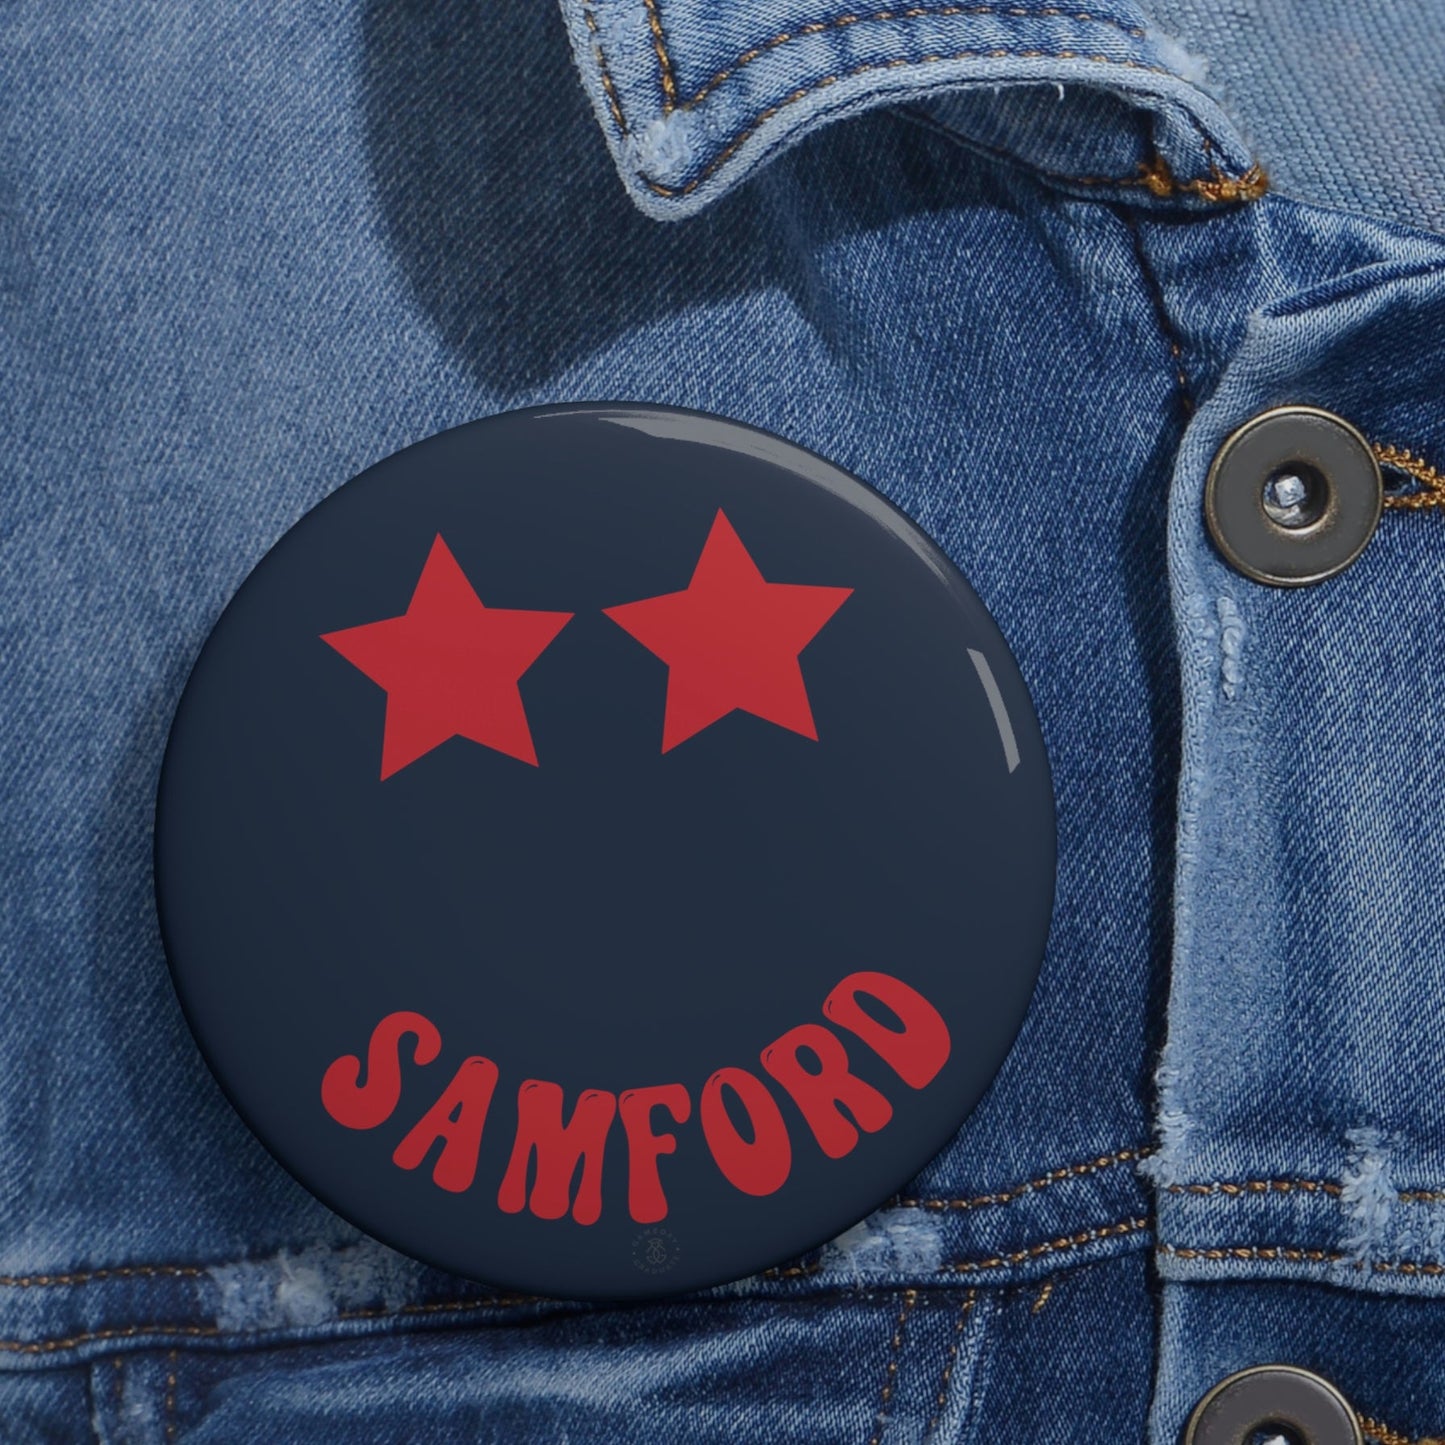 Samford Stars Button